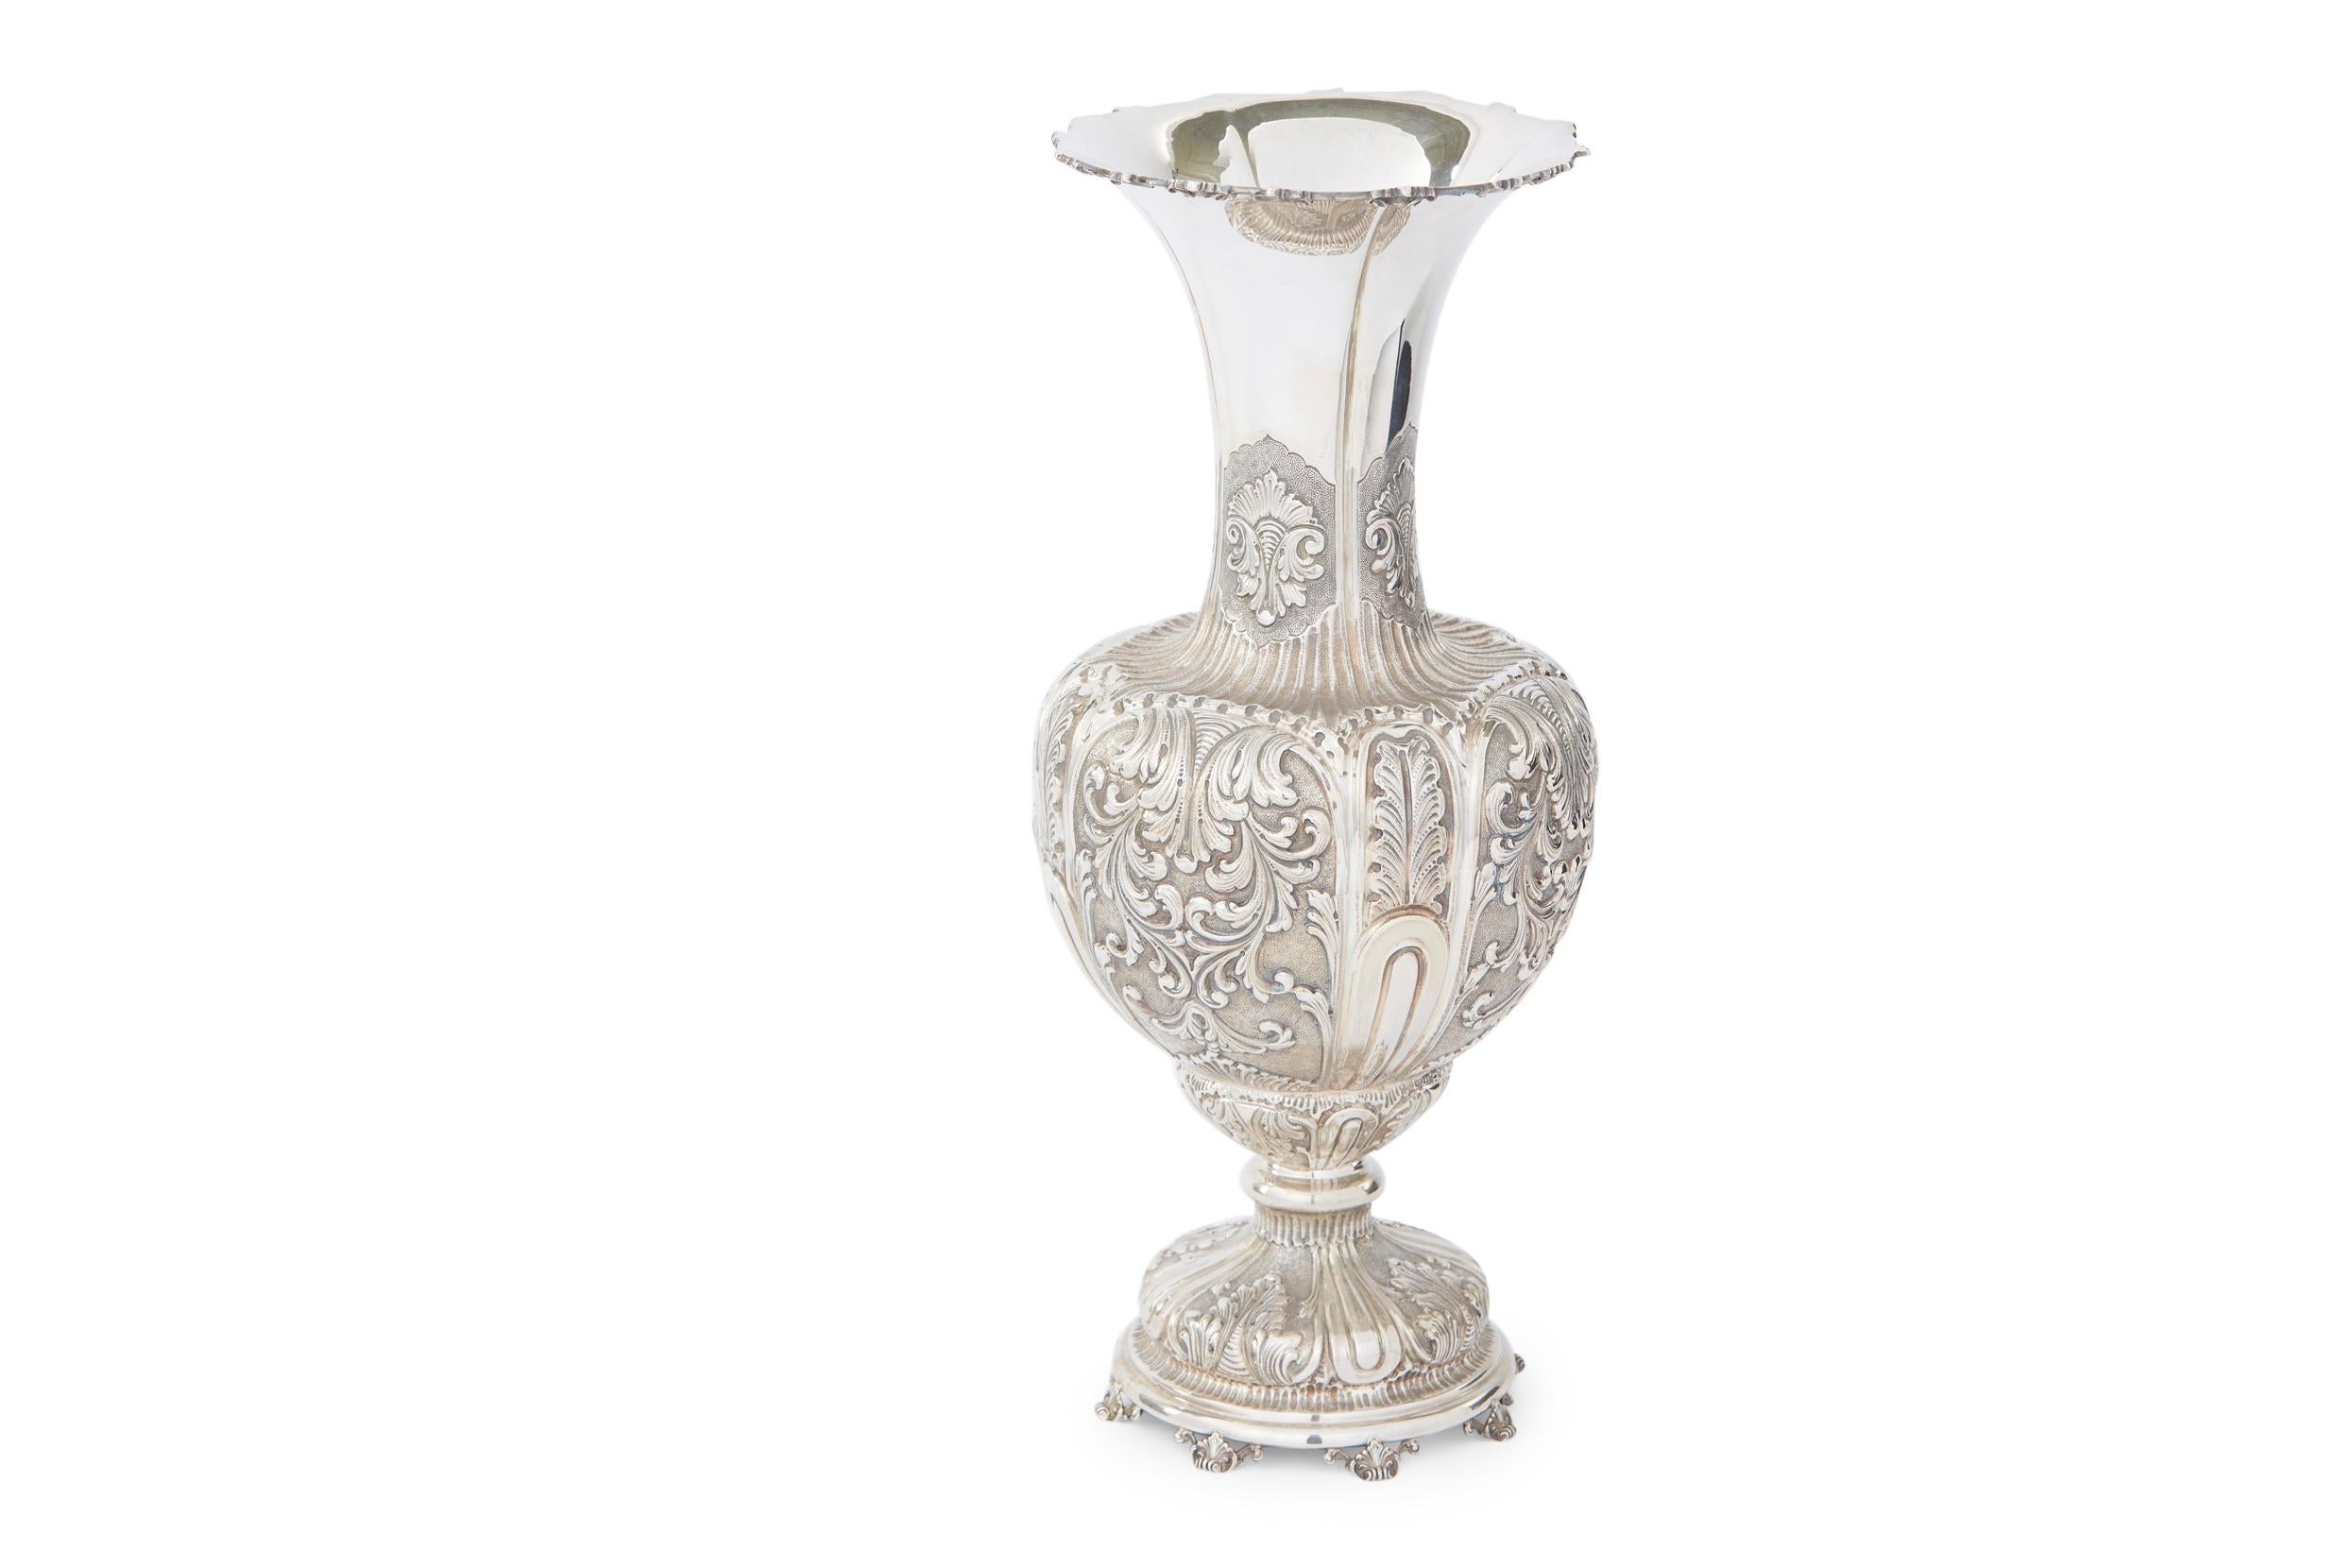 Sehr große 19. Jahrhundert Sterling Silber dekorativen Tafelaufsatz / Vase mit externen Design-Details und geriffelten Hals oben öffnen. Die Vase / Stück ist in großem antiken Zustand. Leichte alters- und gebrauchsbedingte Gebrauchsspuren.